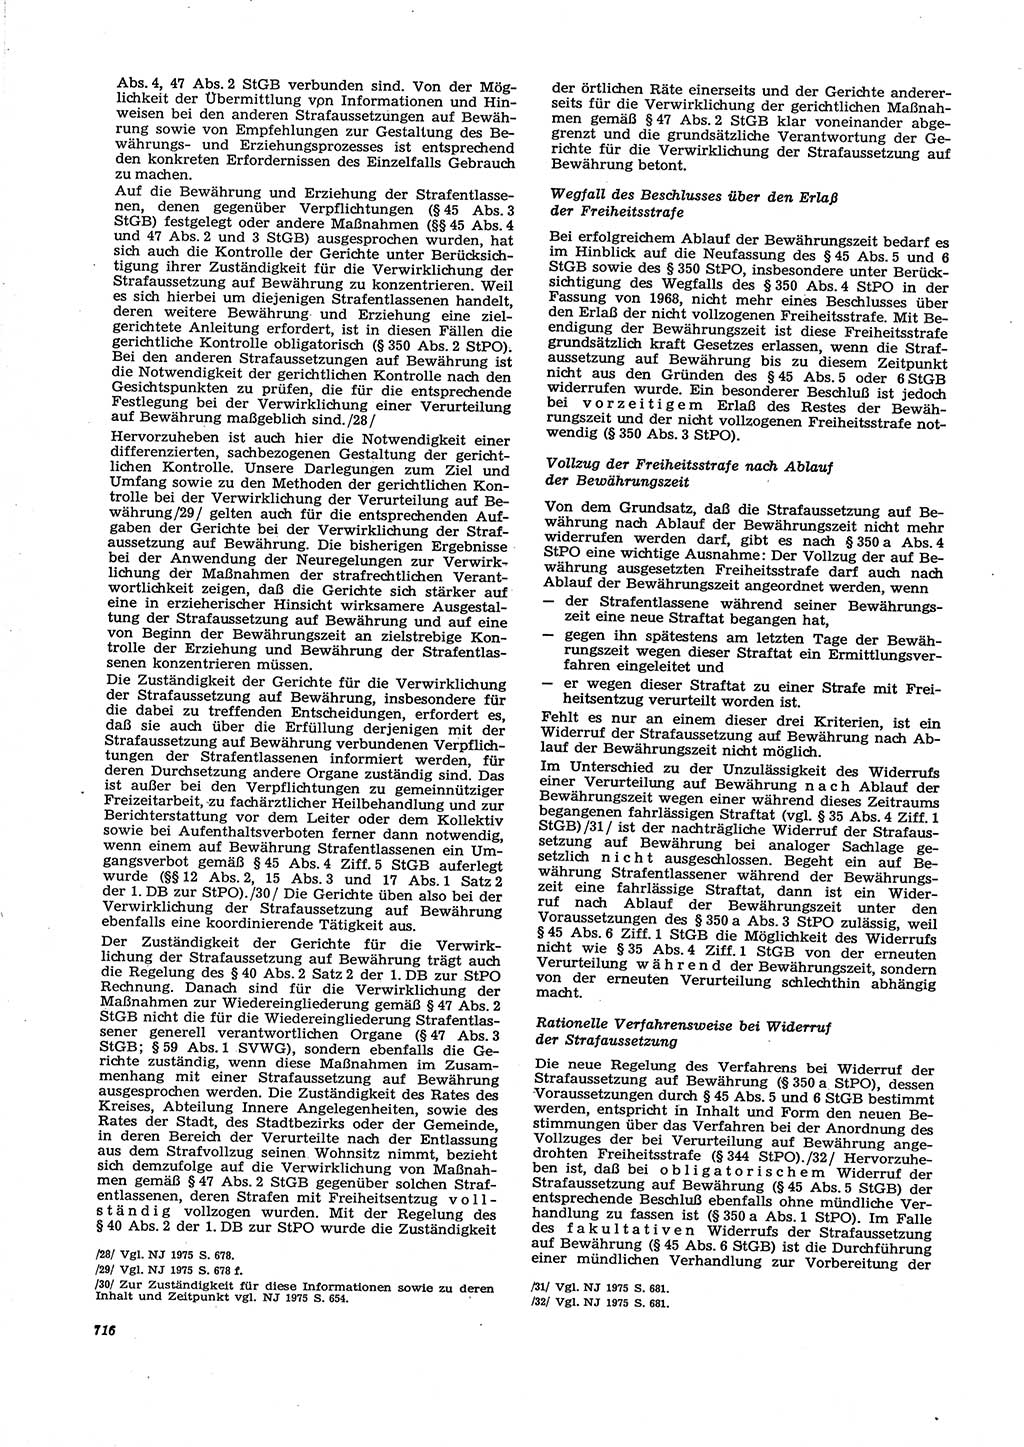 Neue Justiz (NJ), Zeitschrift für Recht und Rechtswissenschaft [Deutsche Demokratische Republik (DDR)], 29. Jahrgang 1975, Seite 716 (NJ DDR 1975, S. 716)